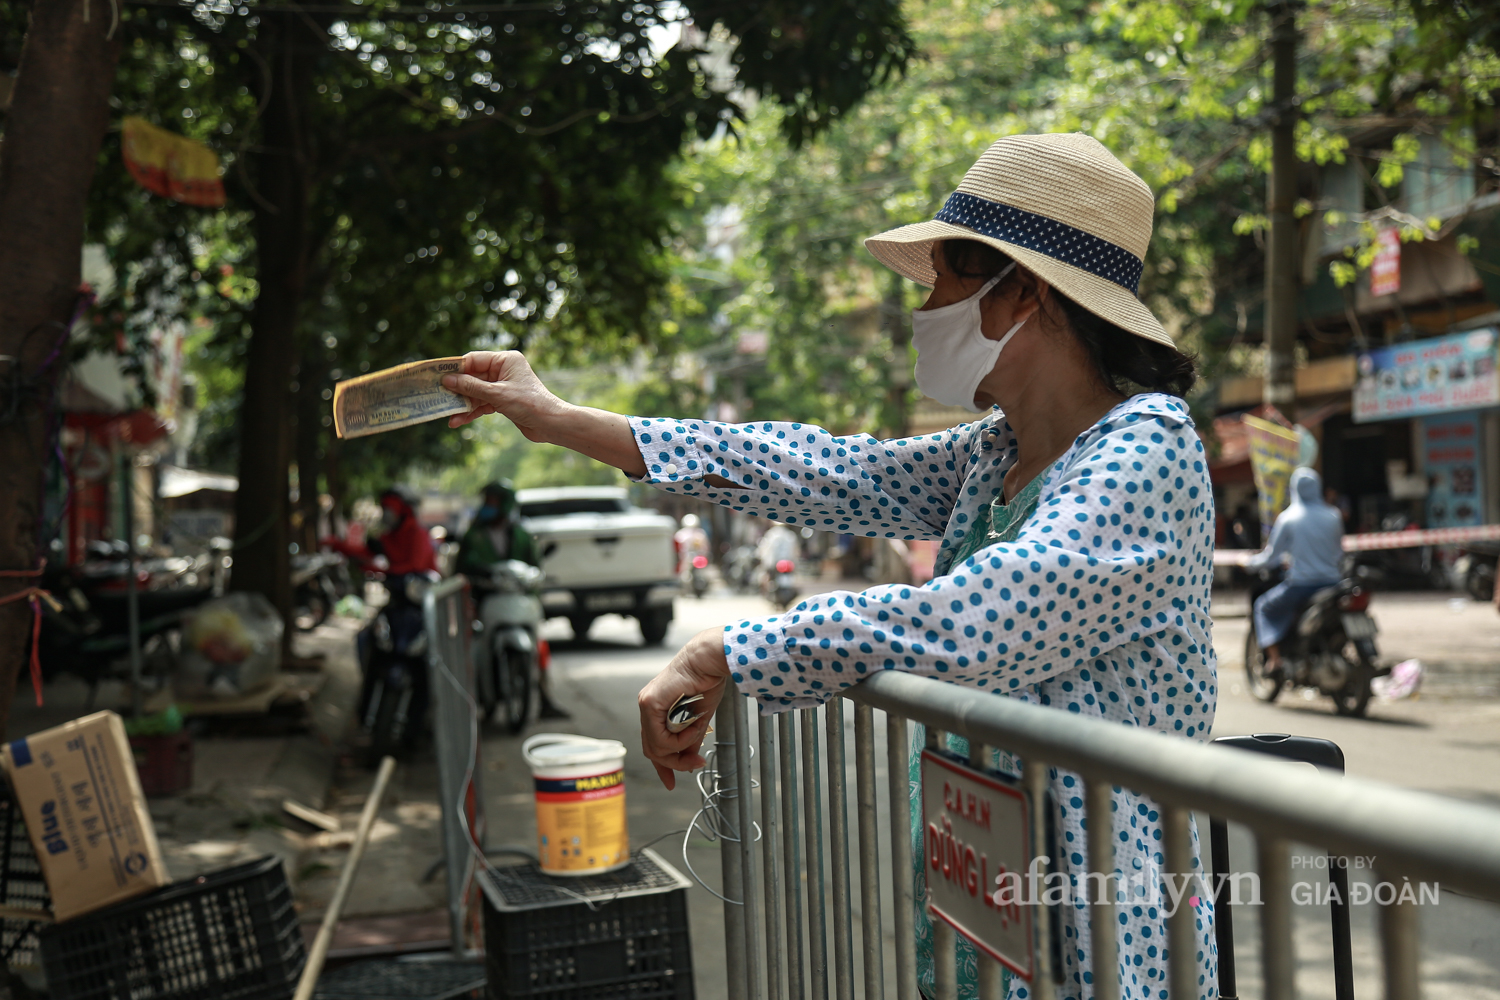 Chung tay phòng chống dịch COVID-19, một khu chợ ở Hà Nội người dân bỏ tiền vào xô rồi lấy đồ ở chậu - Ảnh 3.